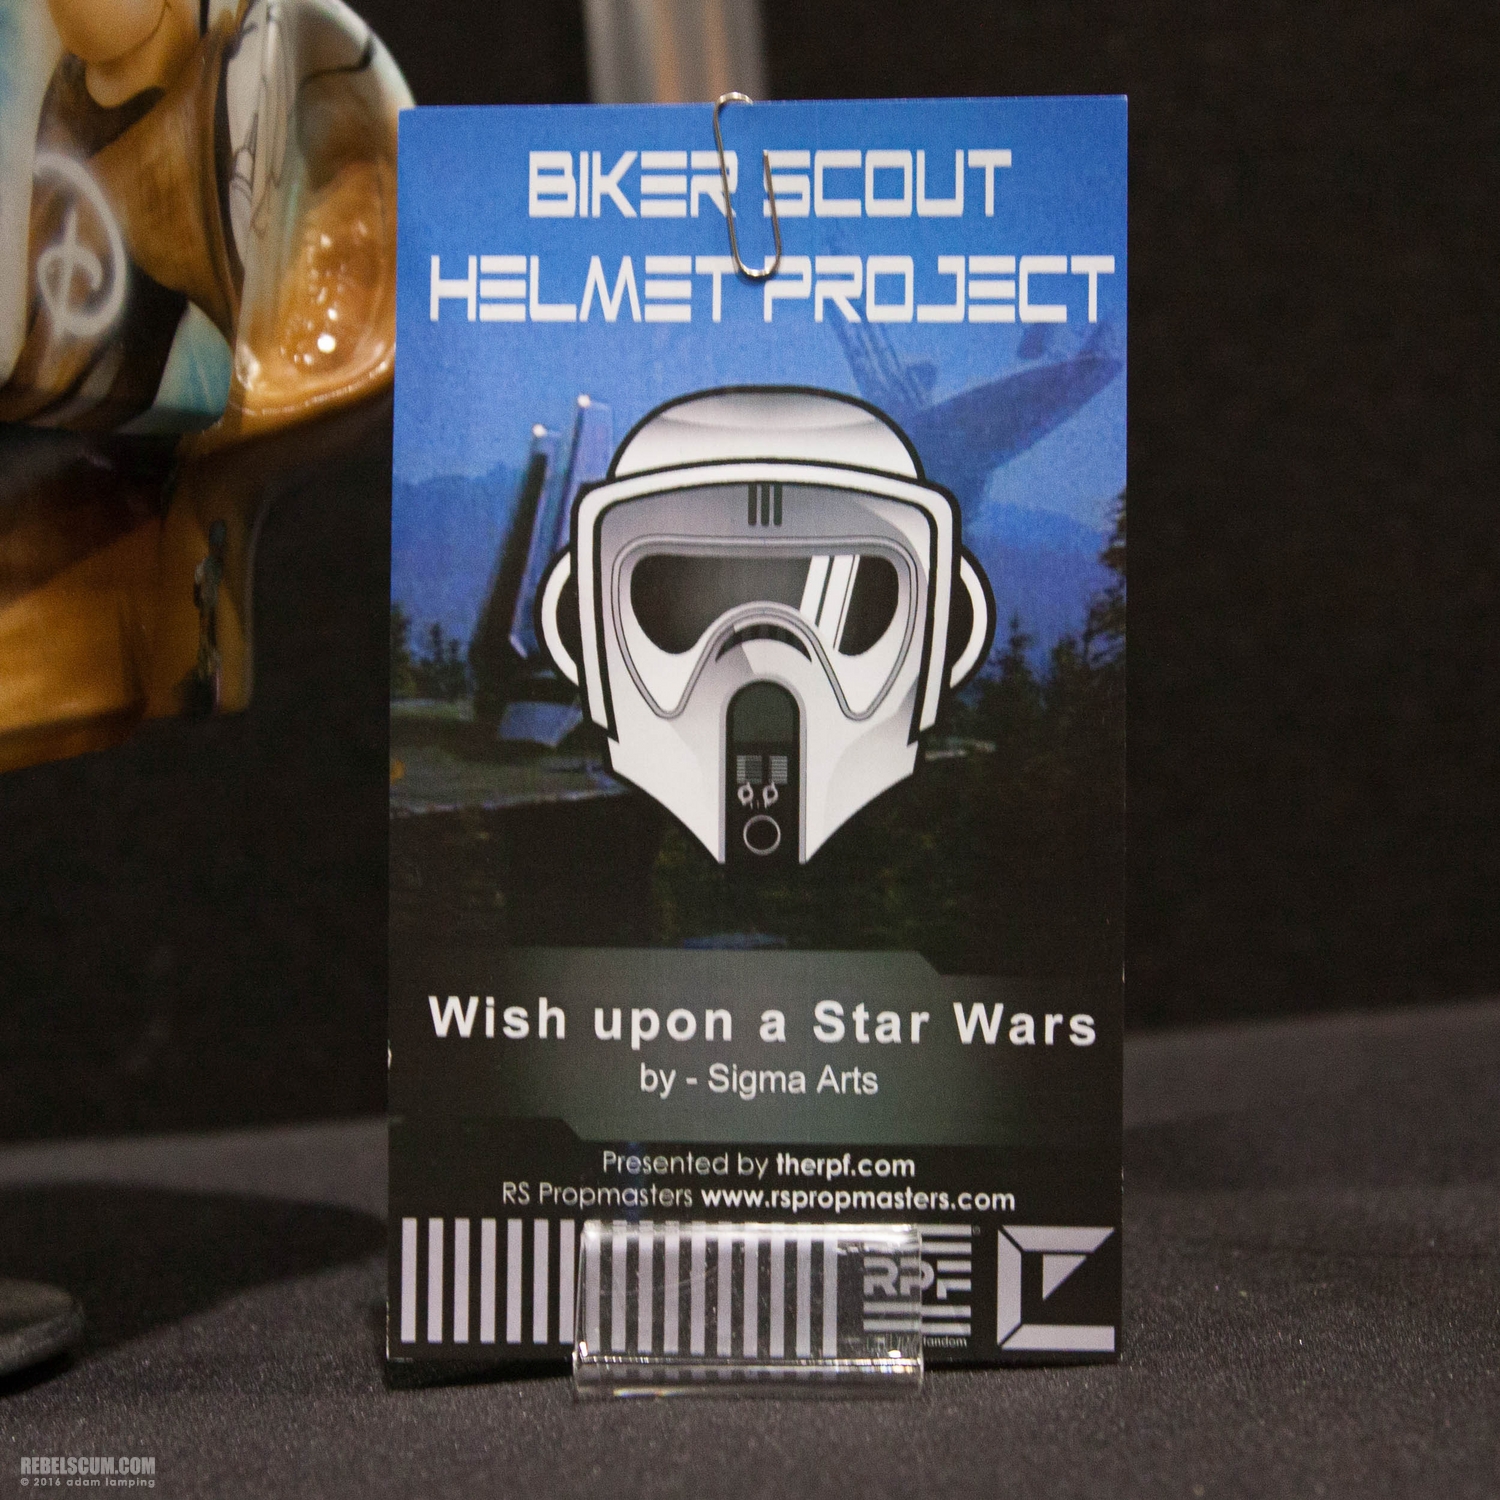 star-wars-celebration-2016-biker-scout-helmet-project-047.jpg